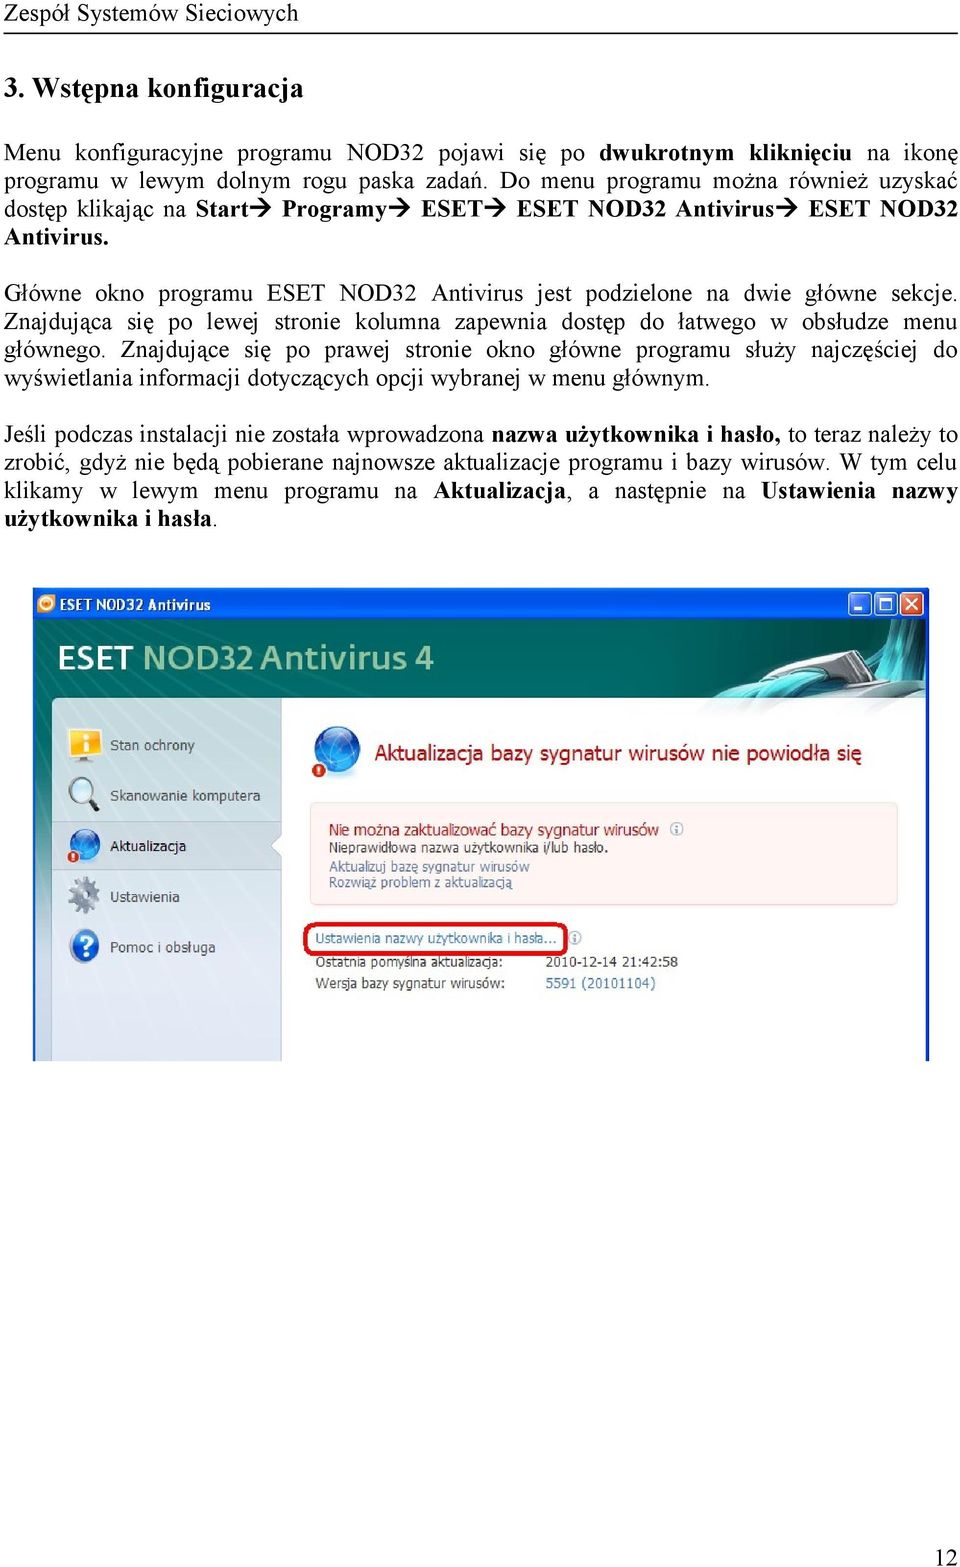 Główne okno programu ESET NOD32 Antivirus jest podzielone na dwie główne sekcje. Znajdująca się po lewej stronie kolumna zapewnia dostęp do łatwego w obsłudze menu głównego.